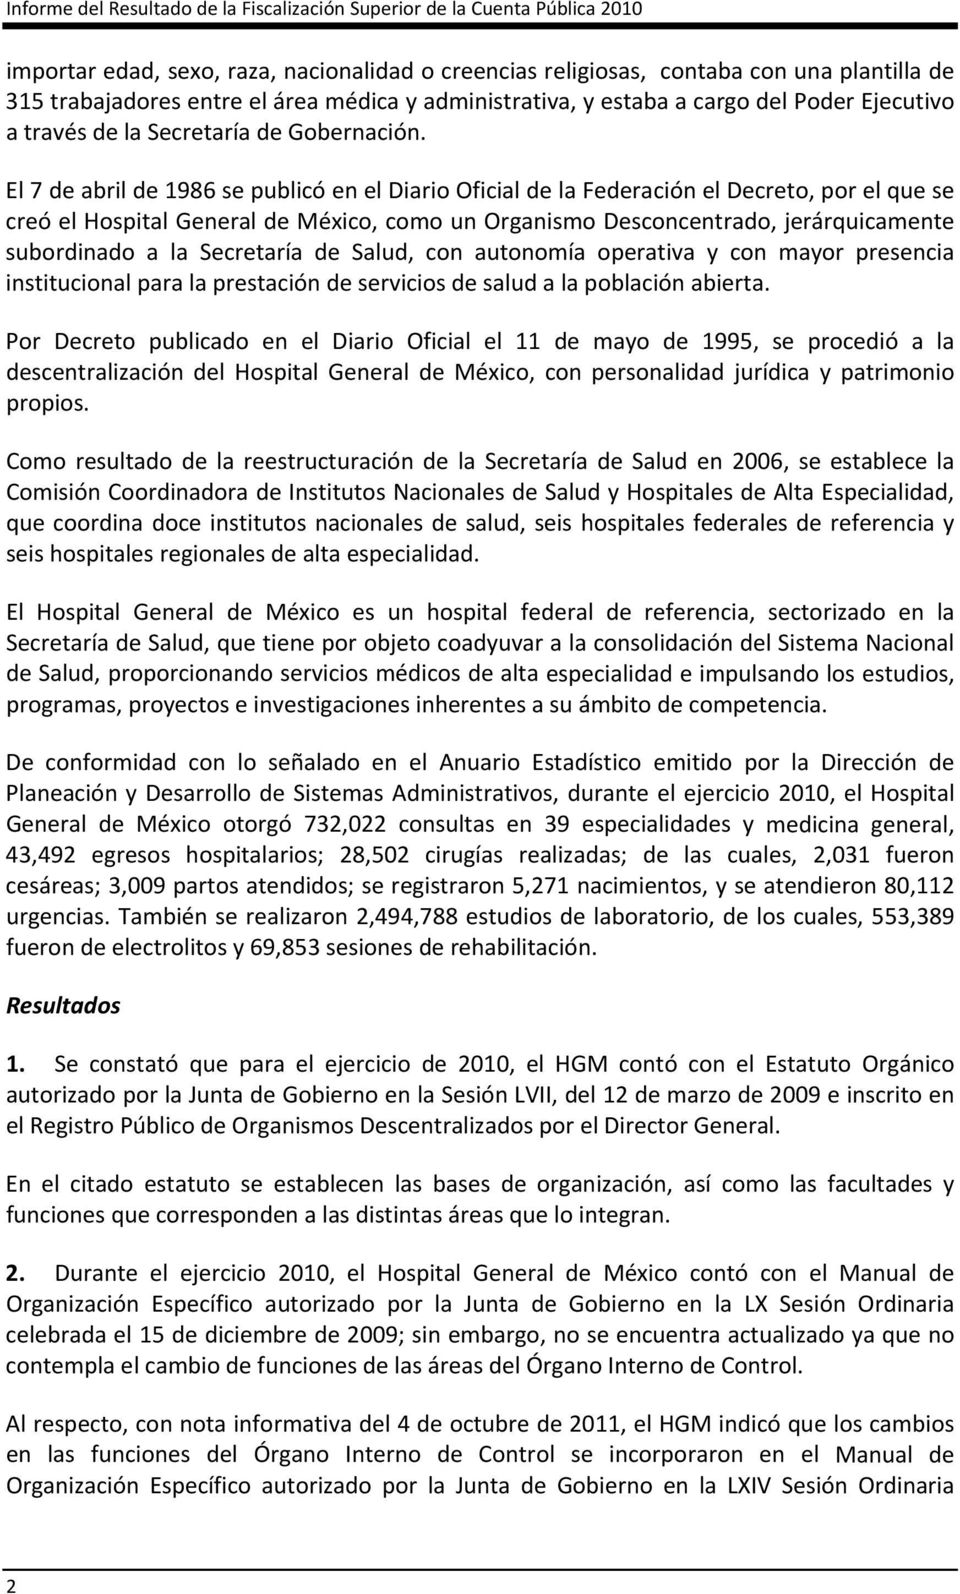 El 7 de abril de 1986 se publicó en el Diario Oficial de la Federación el Decreto, por el que se creó el Hospital General de México, como un Organismo Desconcentrado, jerárquicamente subordinado a la